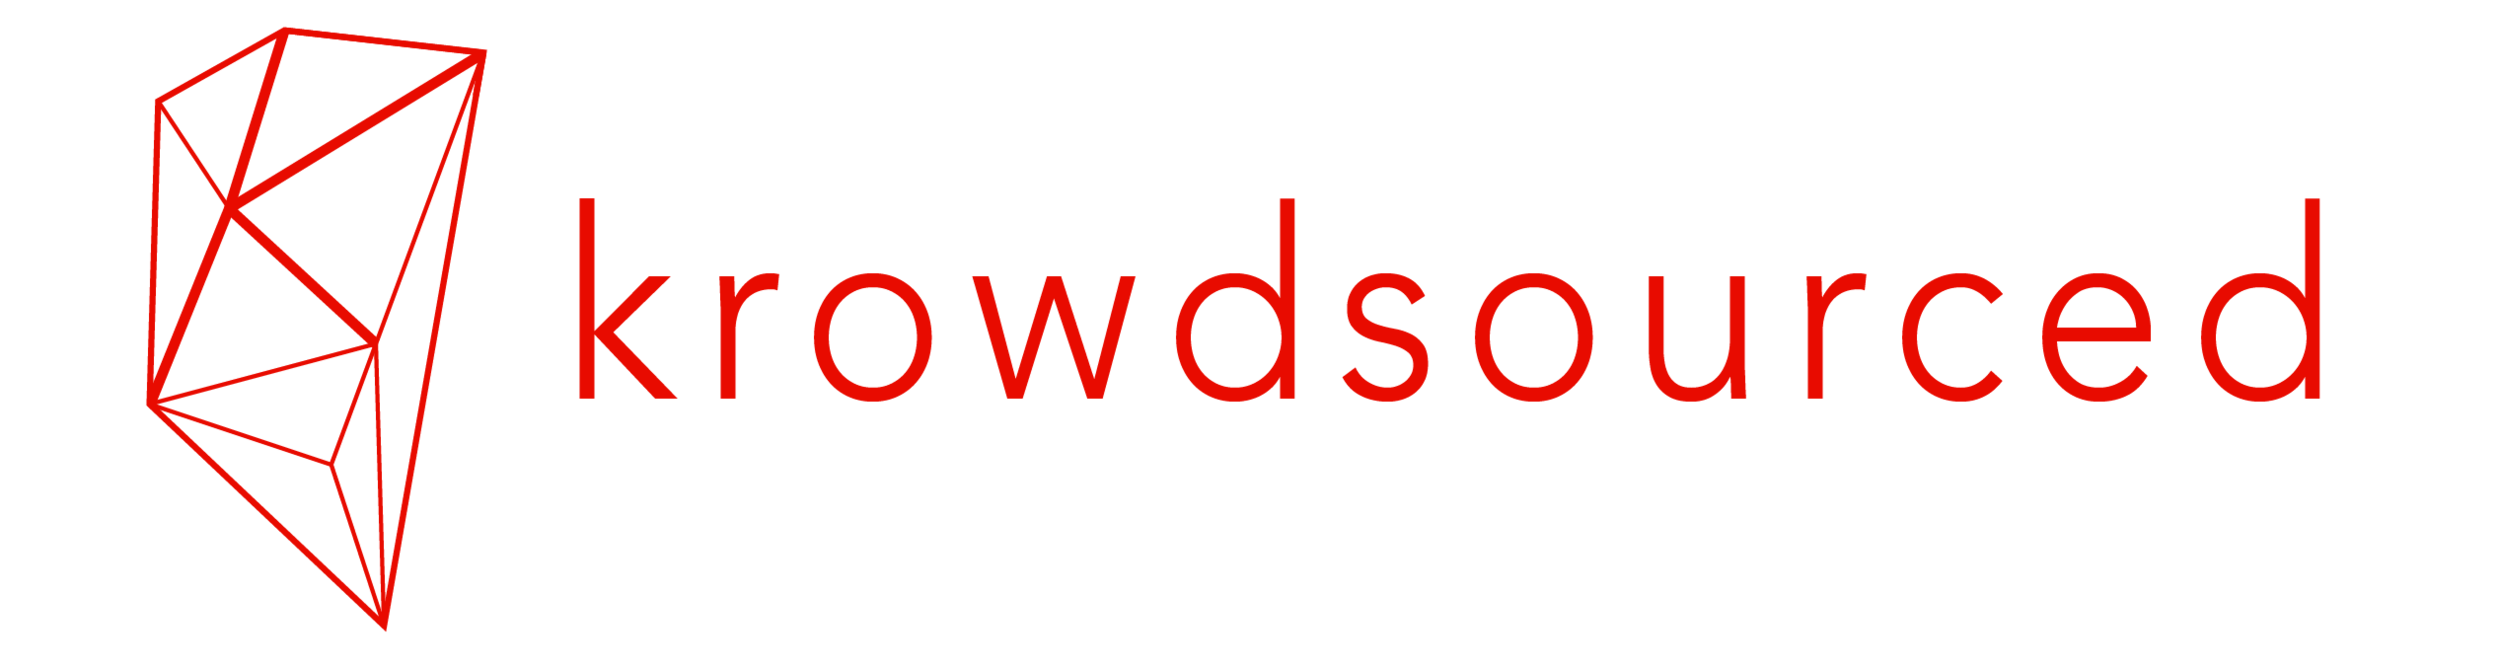 krowdsourced-logo-04-short.png